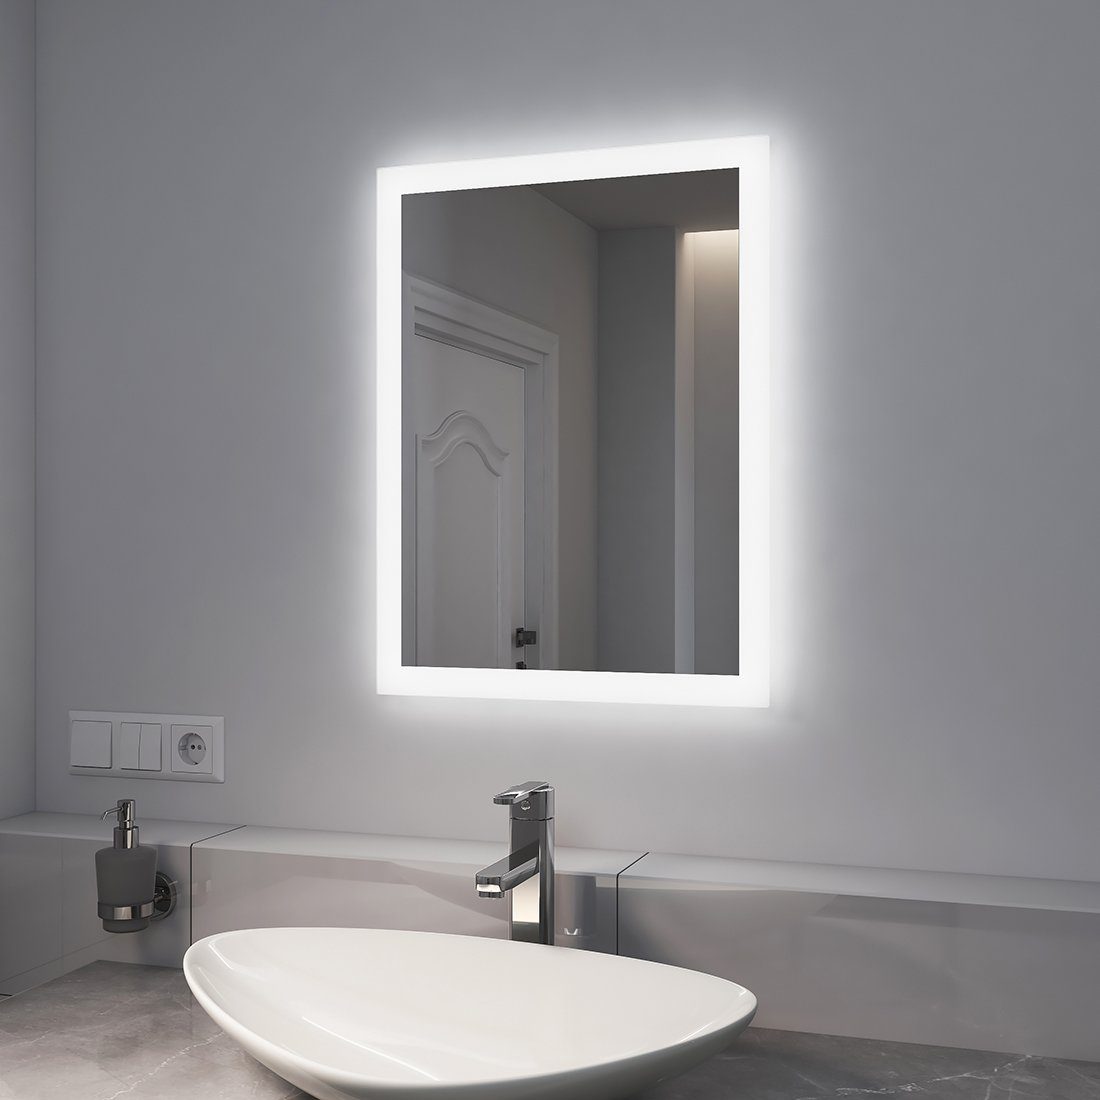 Beleuchtung 2 mit Lichtfarbe Beschlagfrei, Warmweiß/Kaltweiß Wandspiegel, Badspiegel LED Badspiegel Badezimmerspiegel EMKE mit